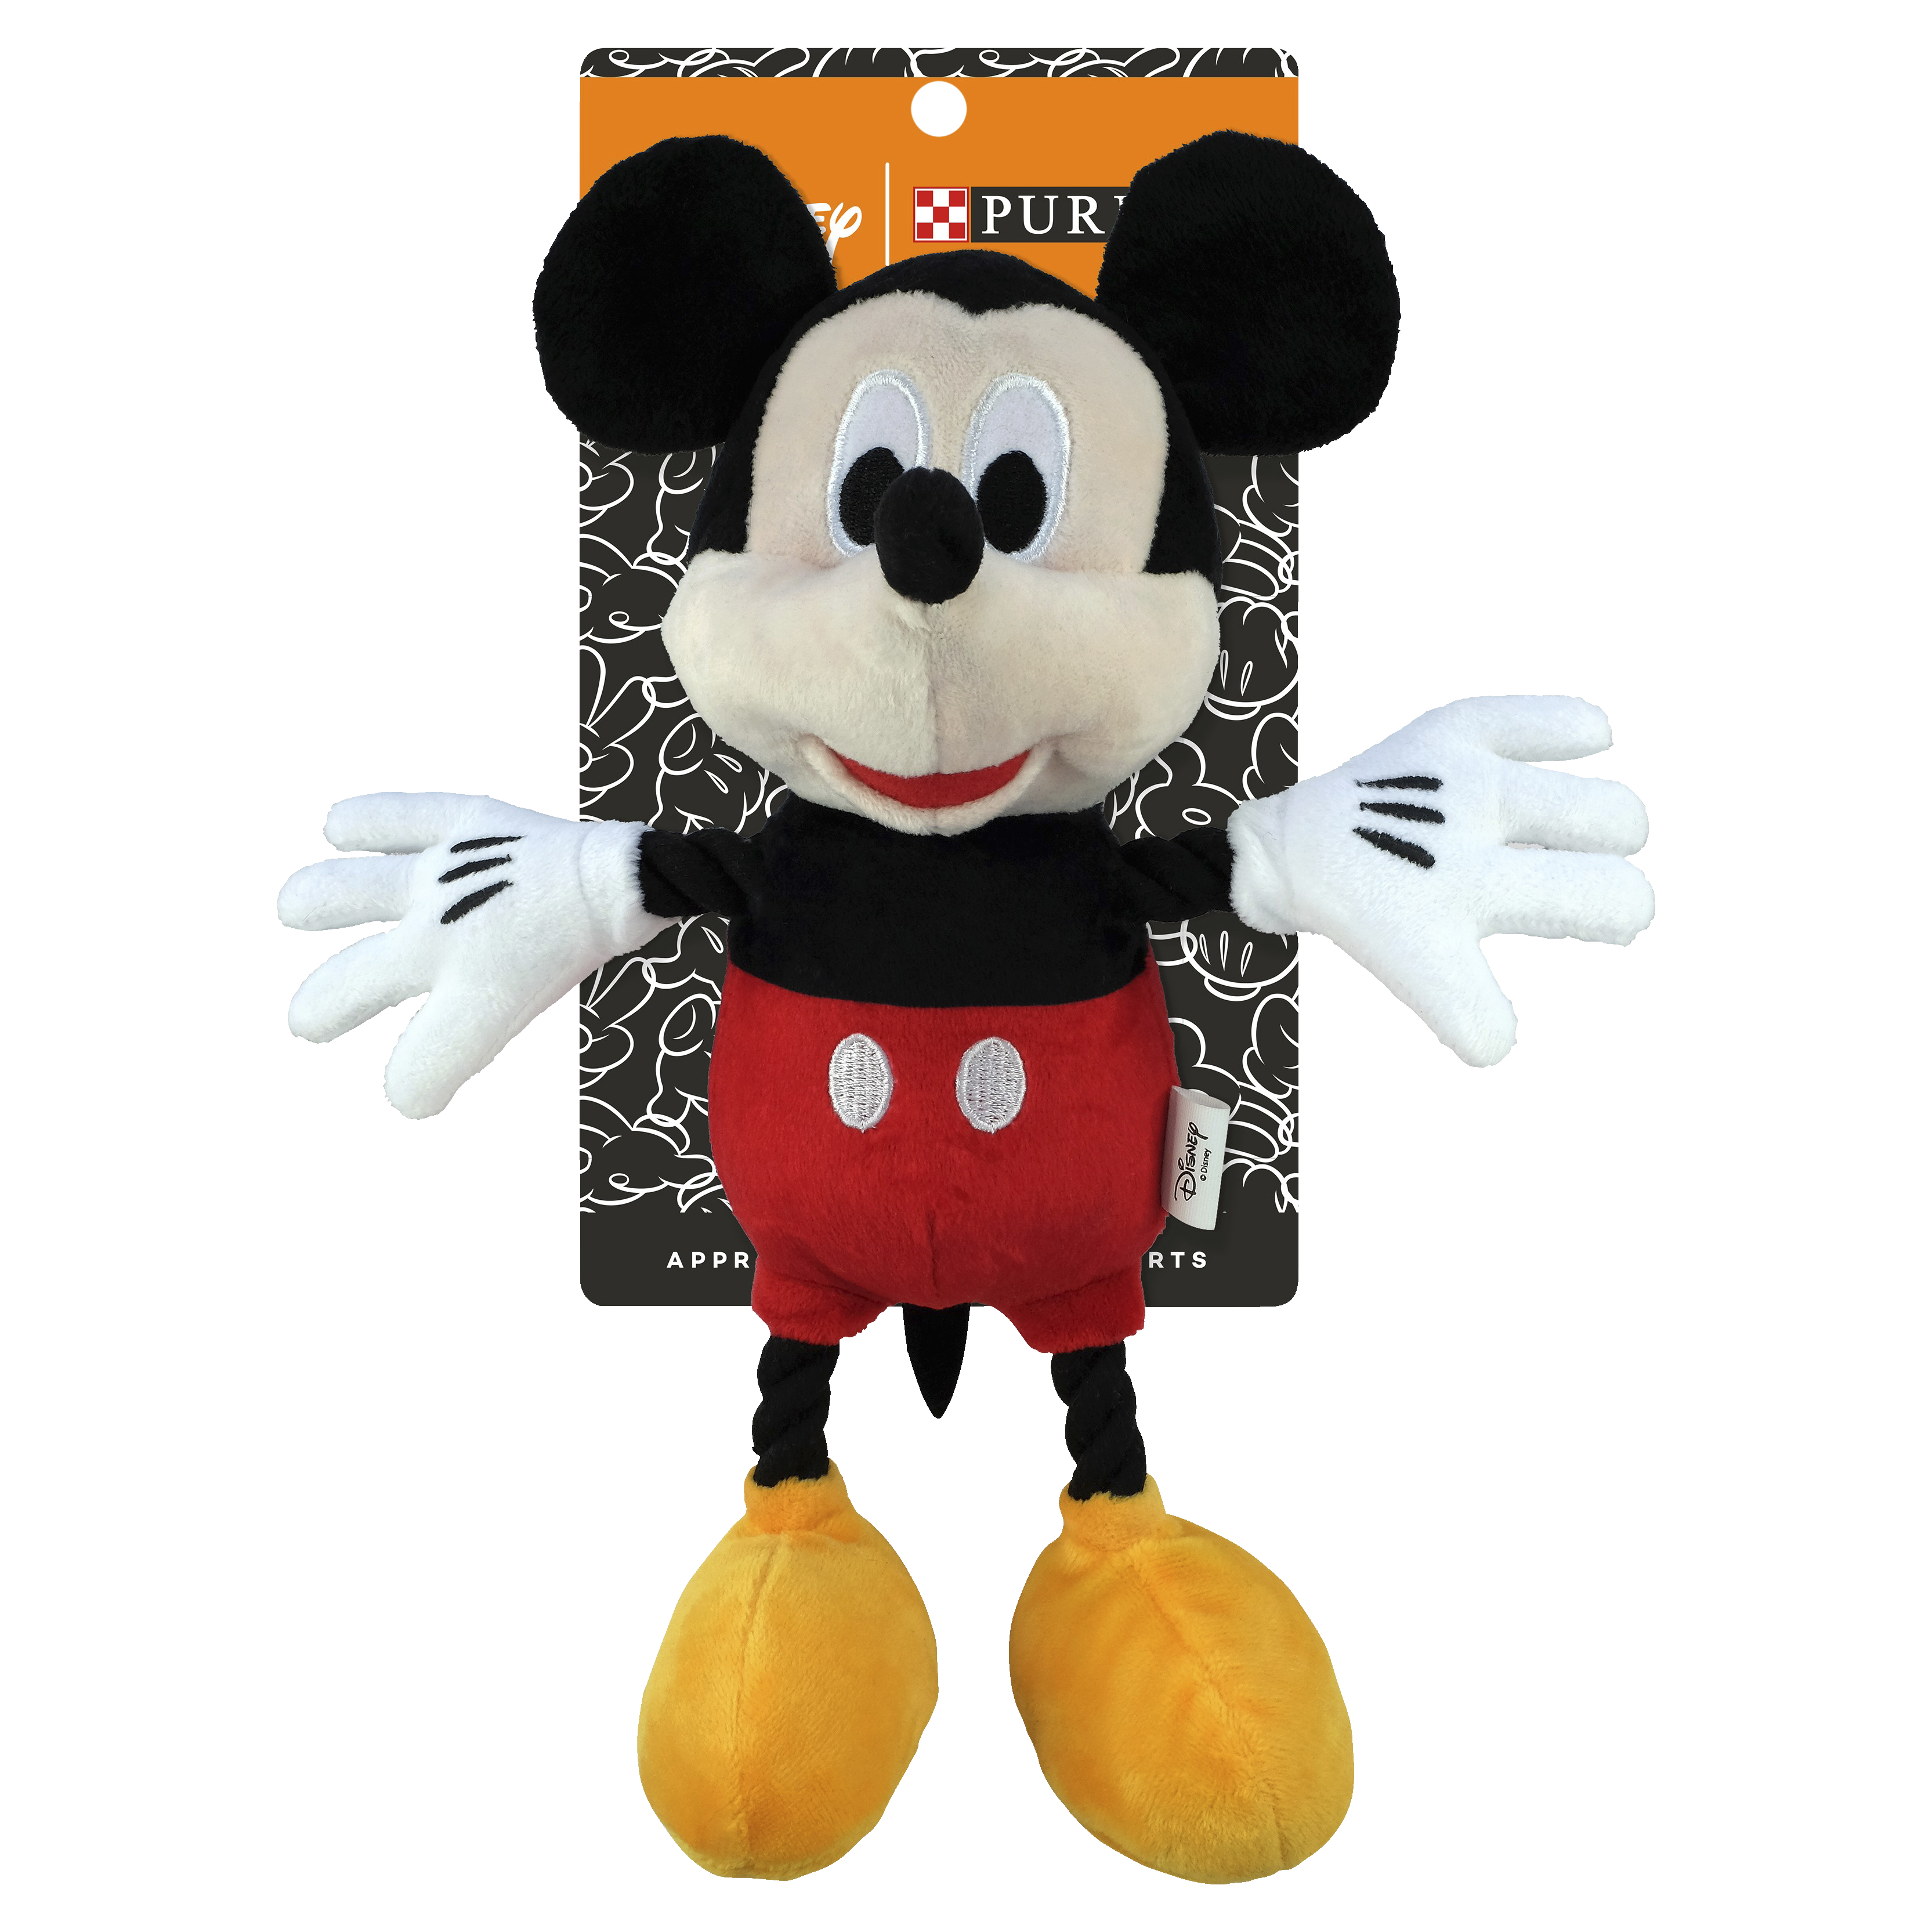 disney mickey mouse plush toy